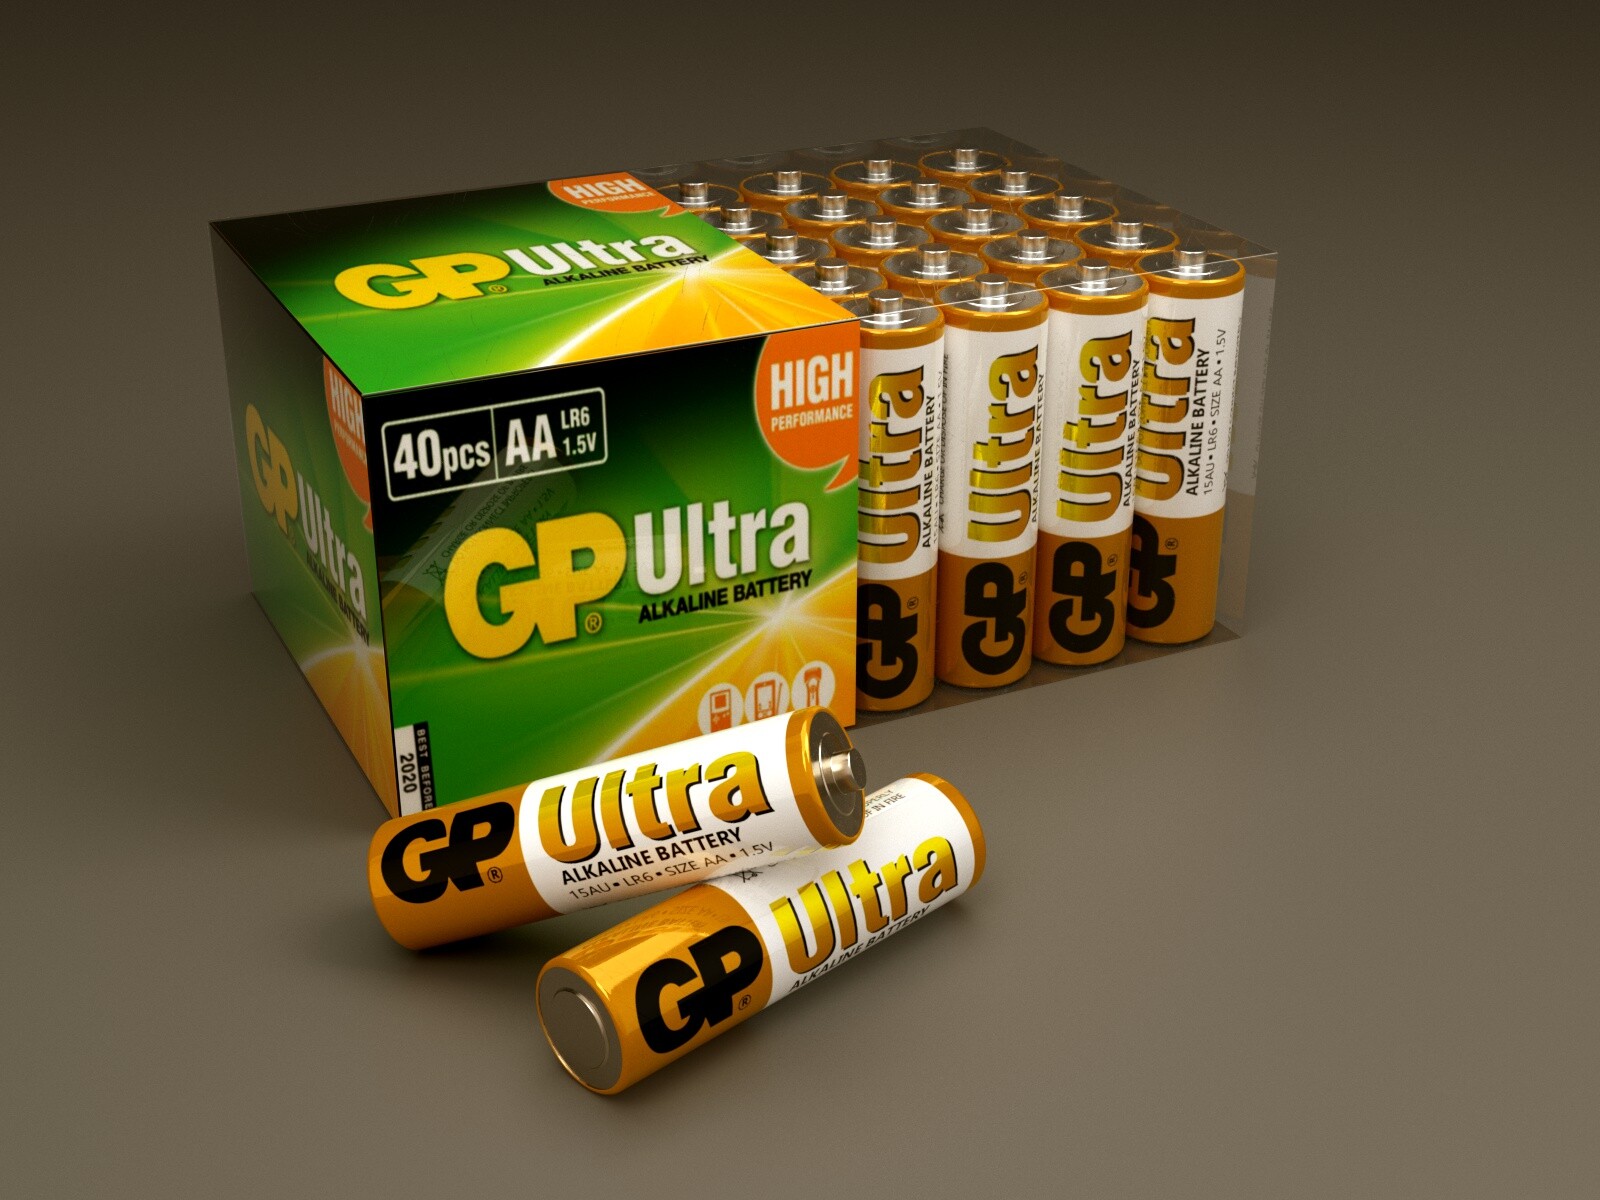 Battery products. Визуализация продукции. Визуализация продукта. Батарейки GP super фон для фотошопа. Визуализация продуктов.